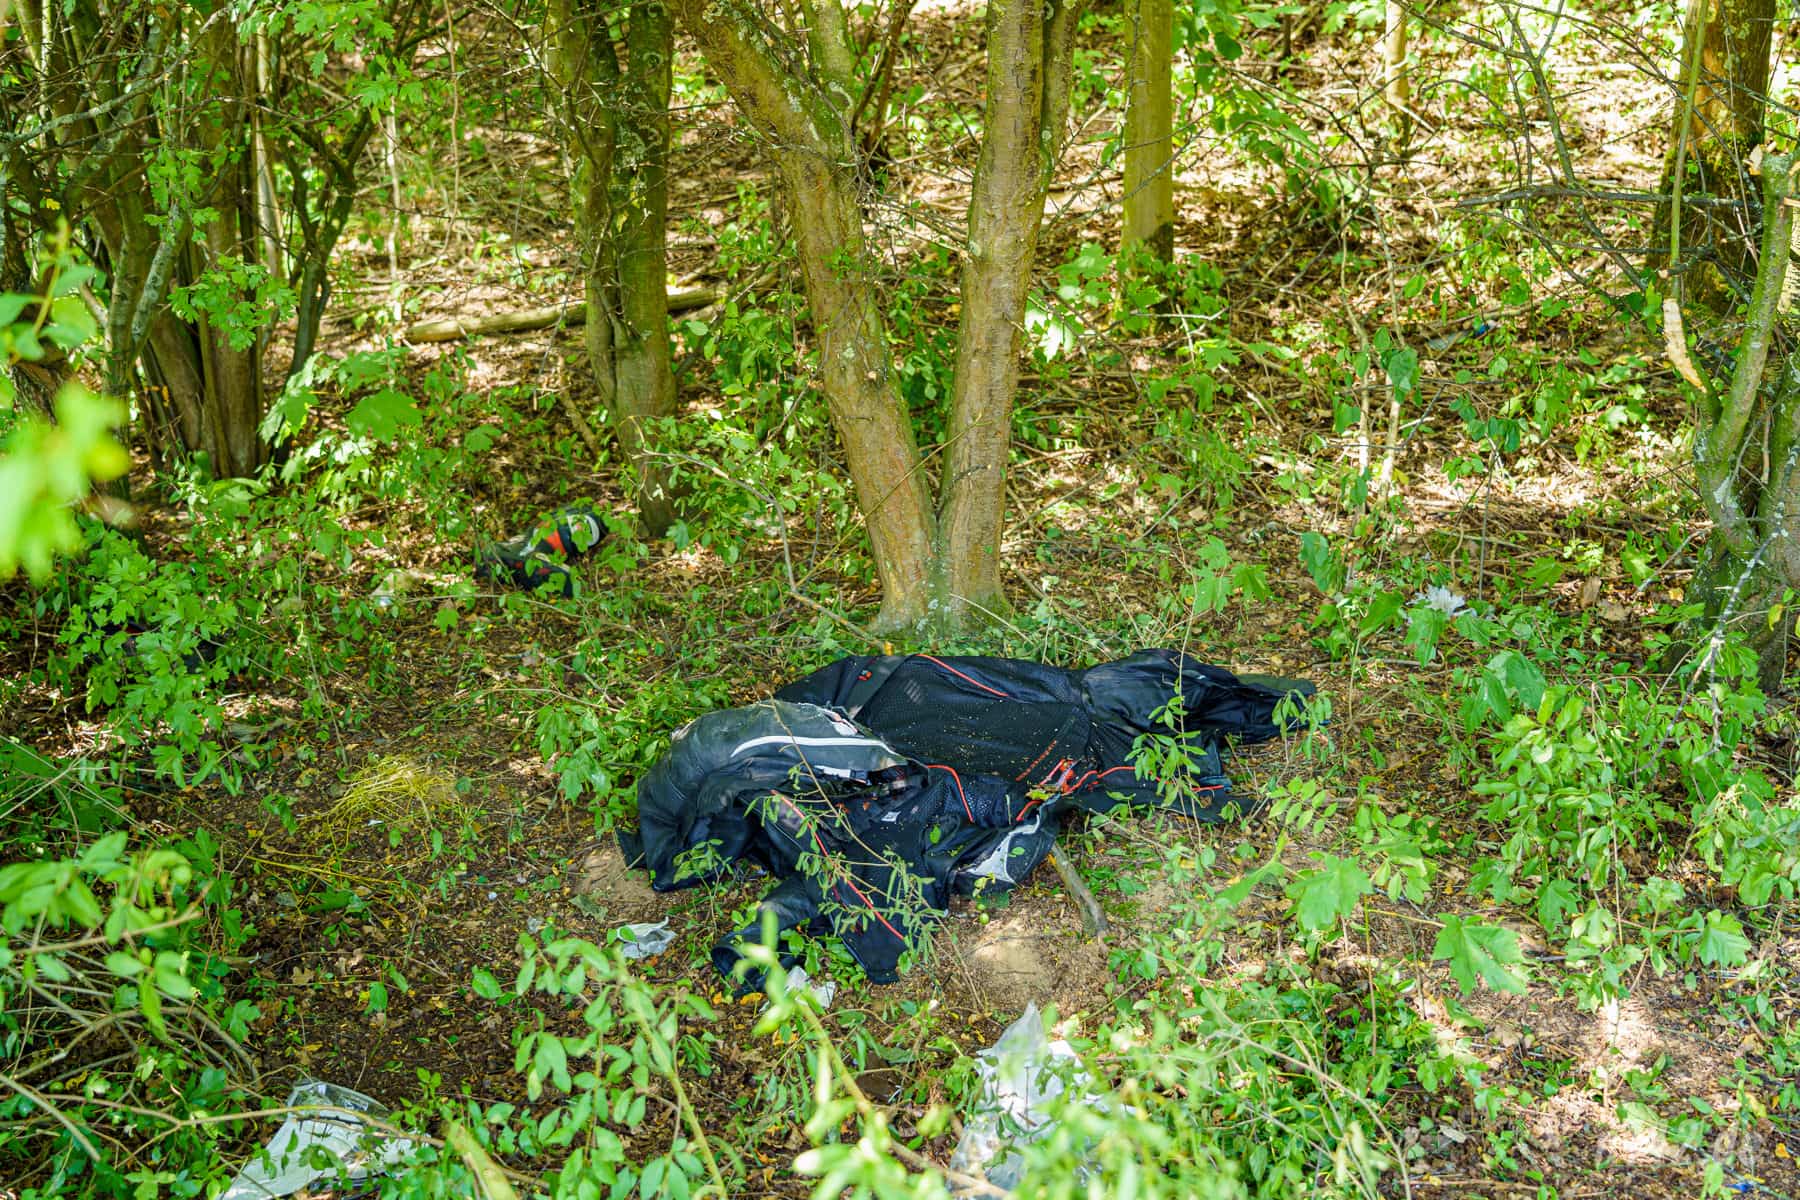 Die Motorradkombi liegt noch im Wäldchen - der Rettungsdienst hatte sie mit einer Kleiderschere entfernt (Foto: n112.de/Stefan Hillen)